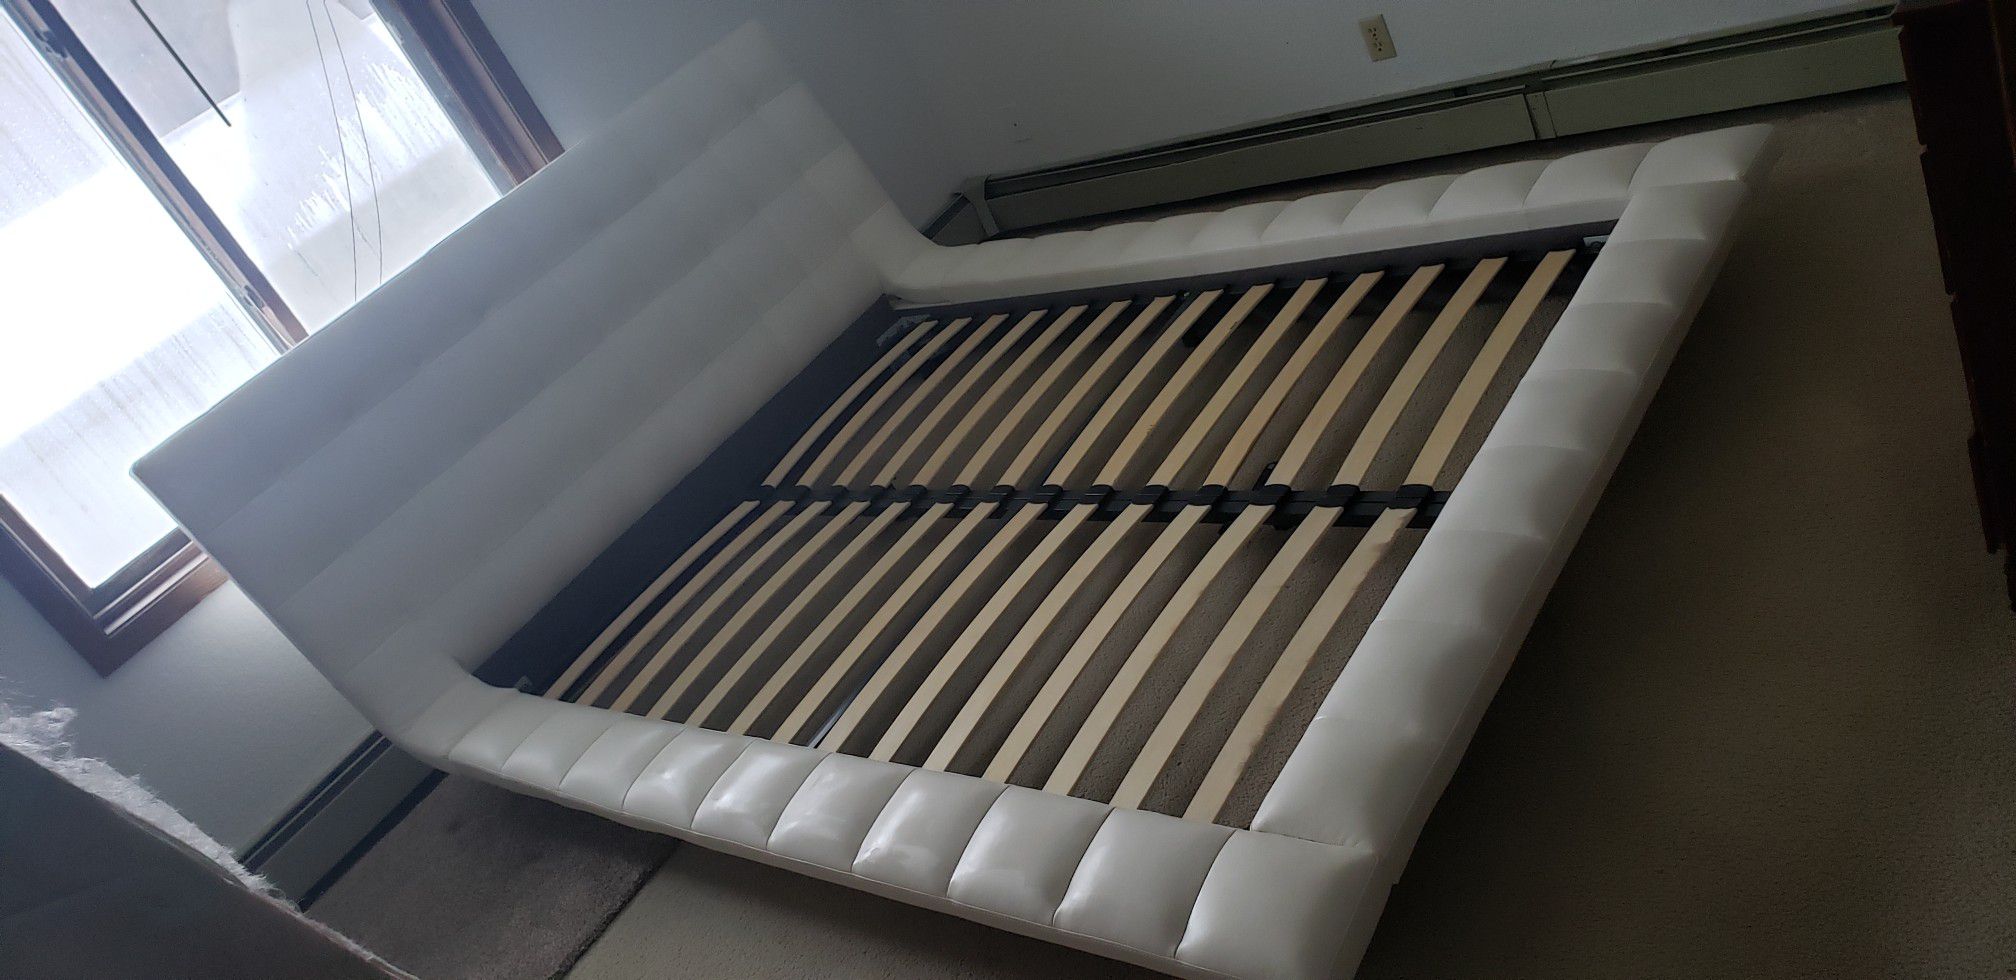 Leather queen platform bed frame